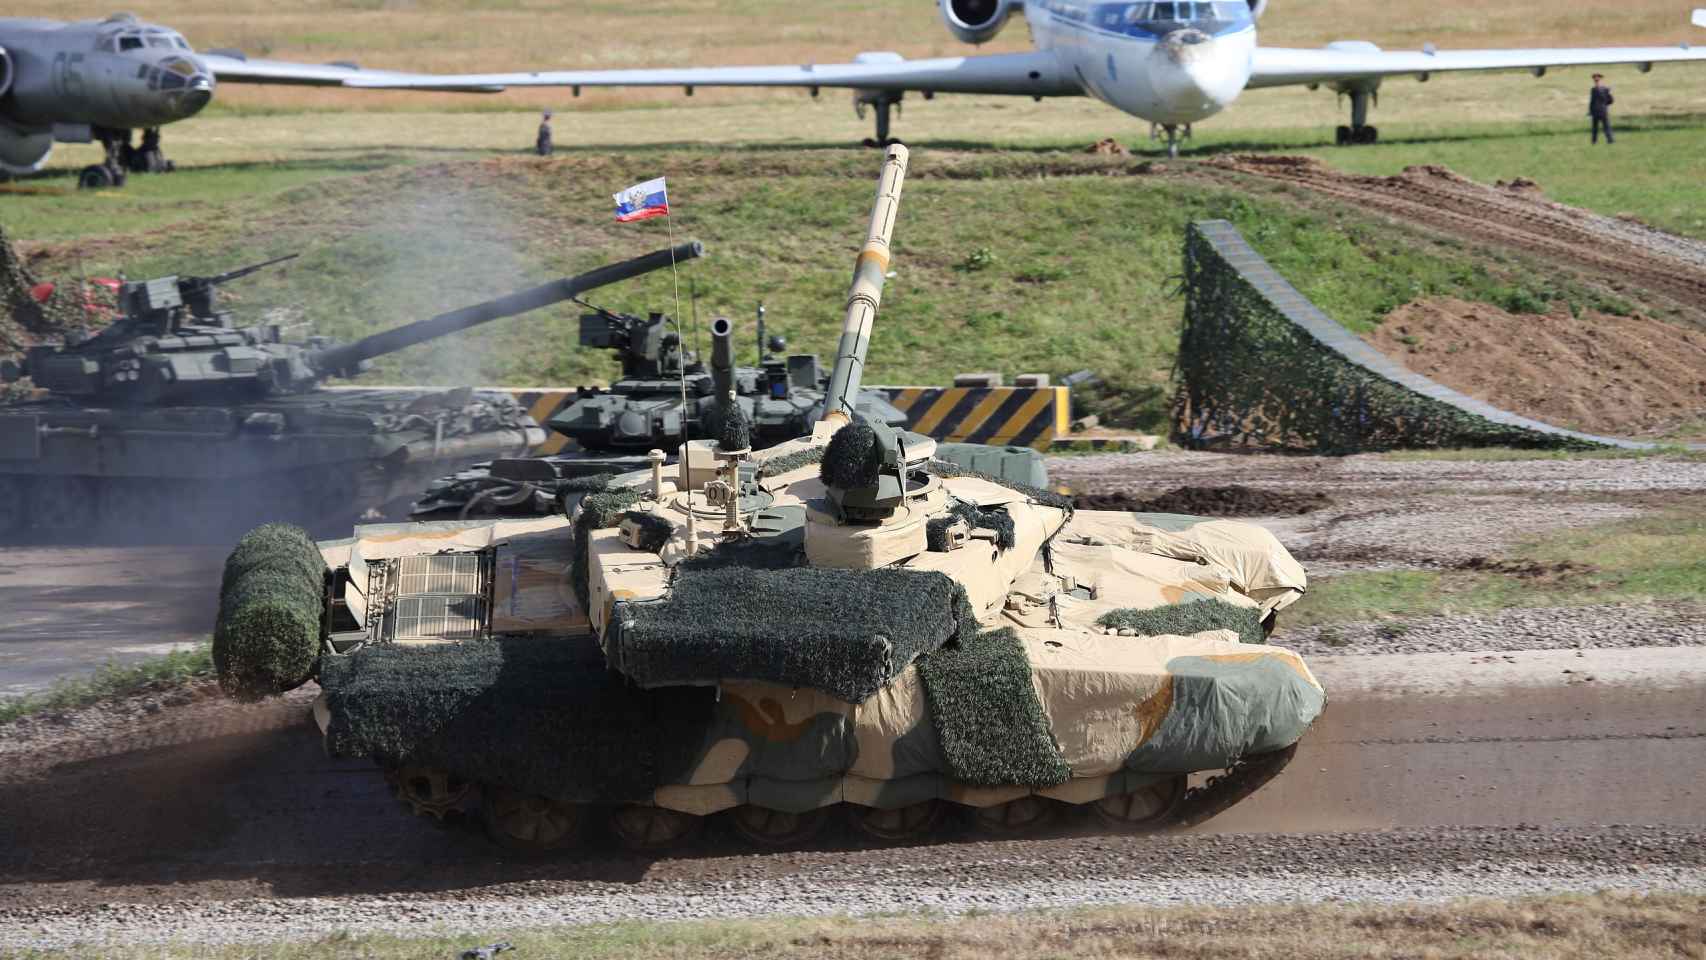 T-90M